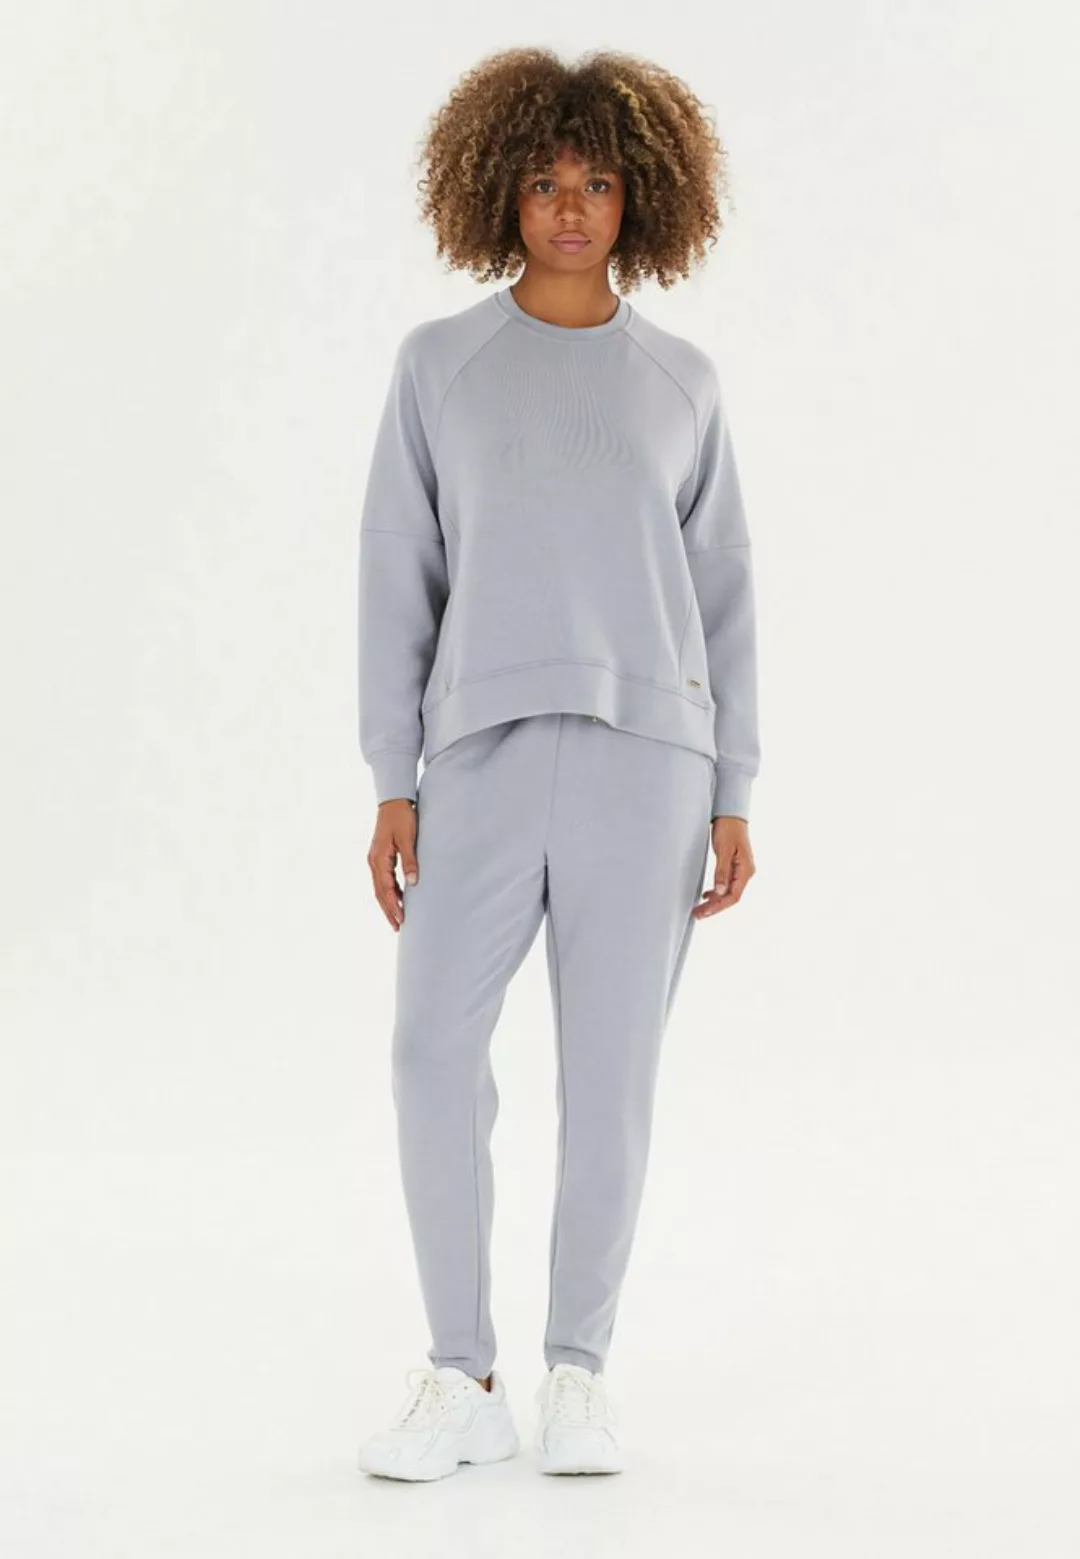 ATHLECIA Sweatshirt Jacey aus extra weichem Material günstig online kaufen